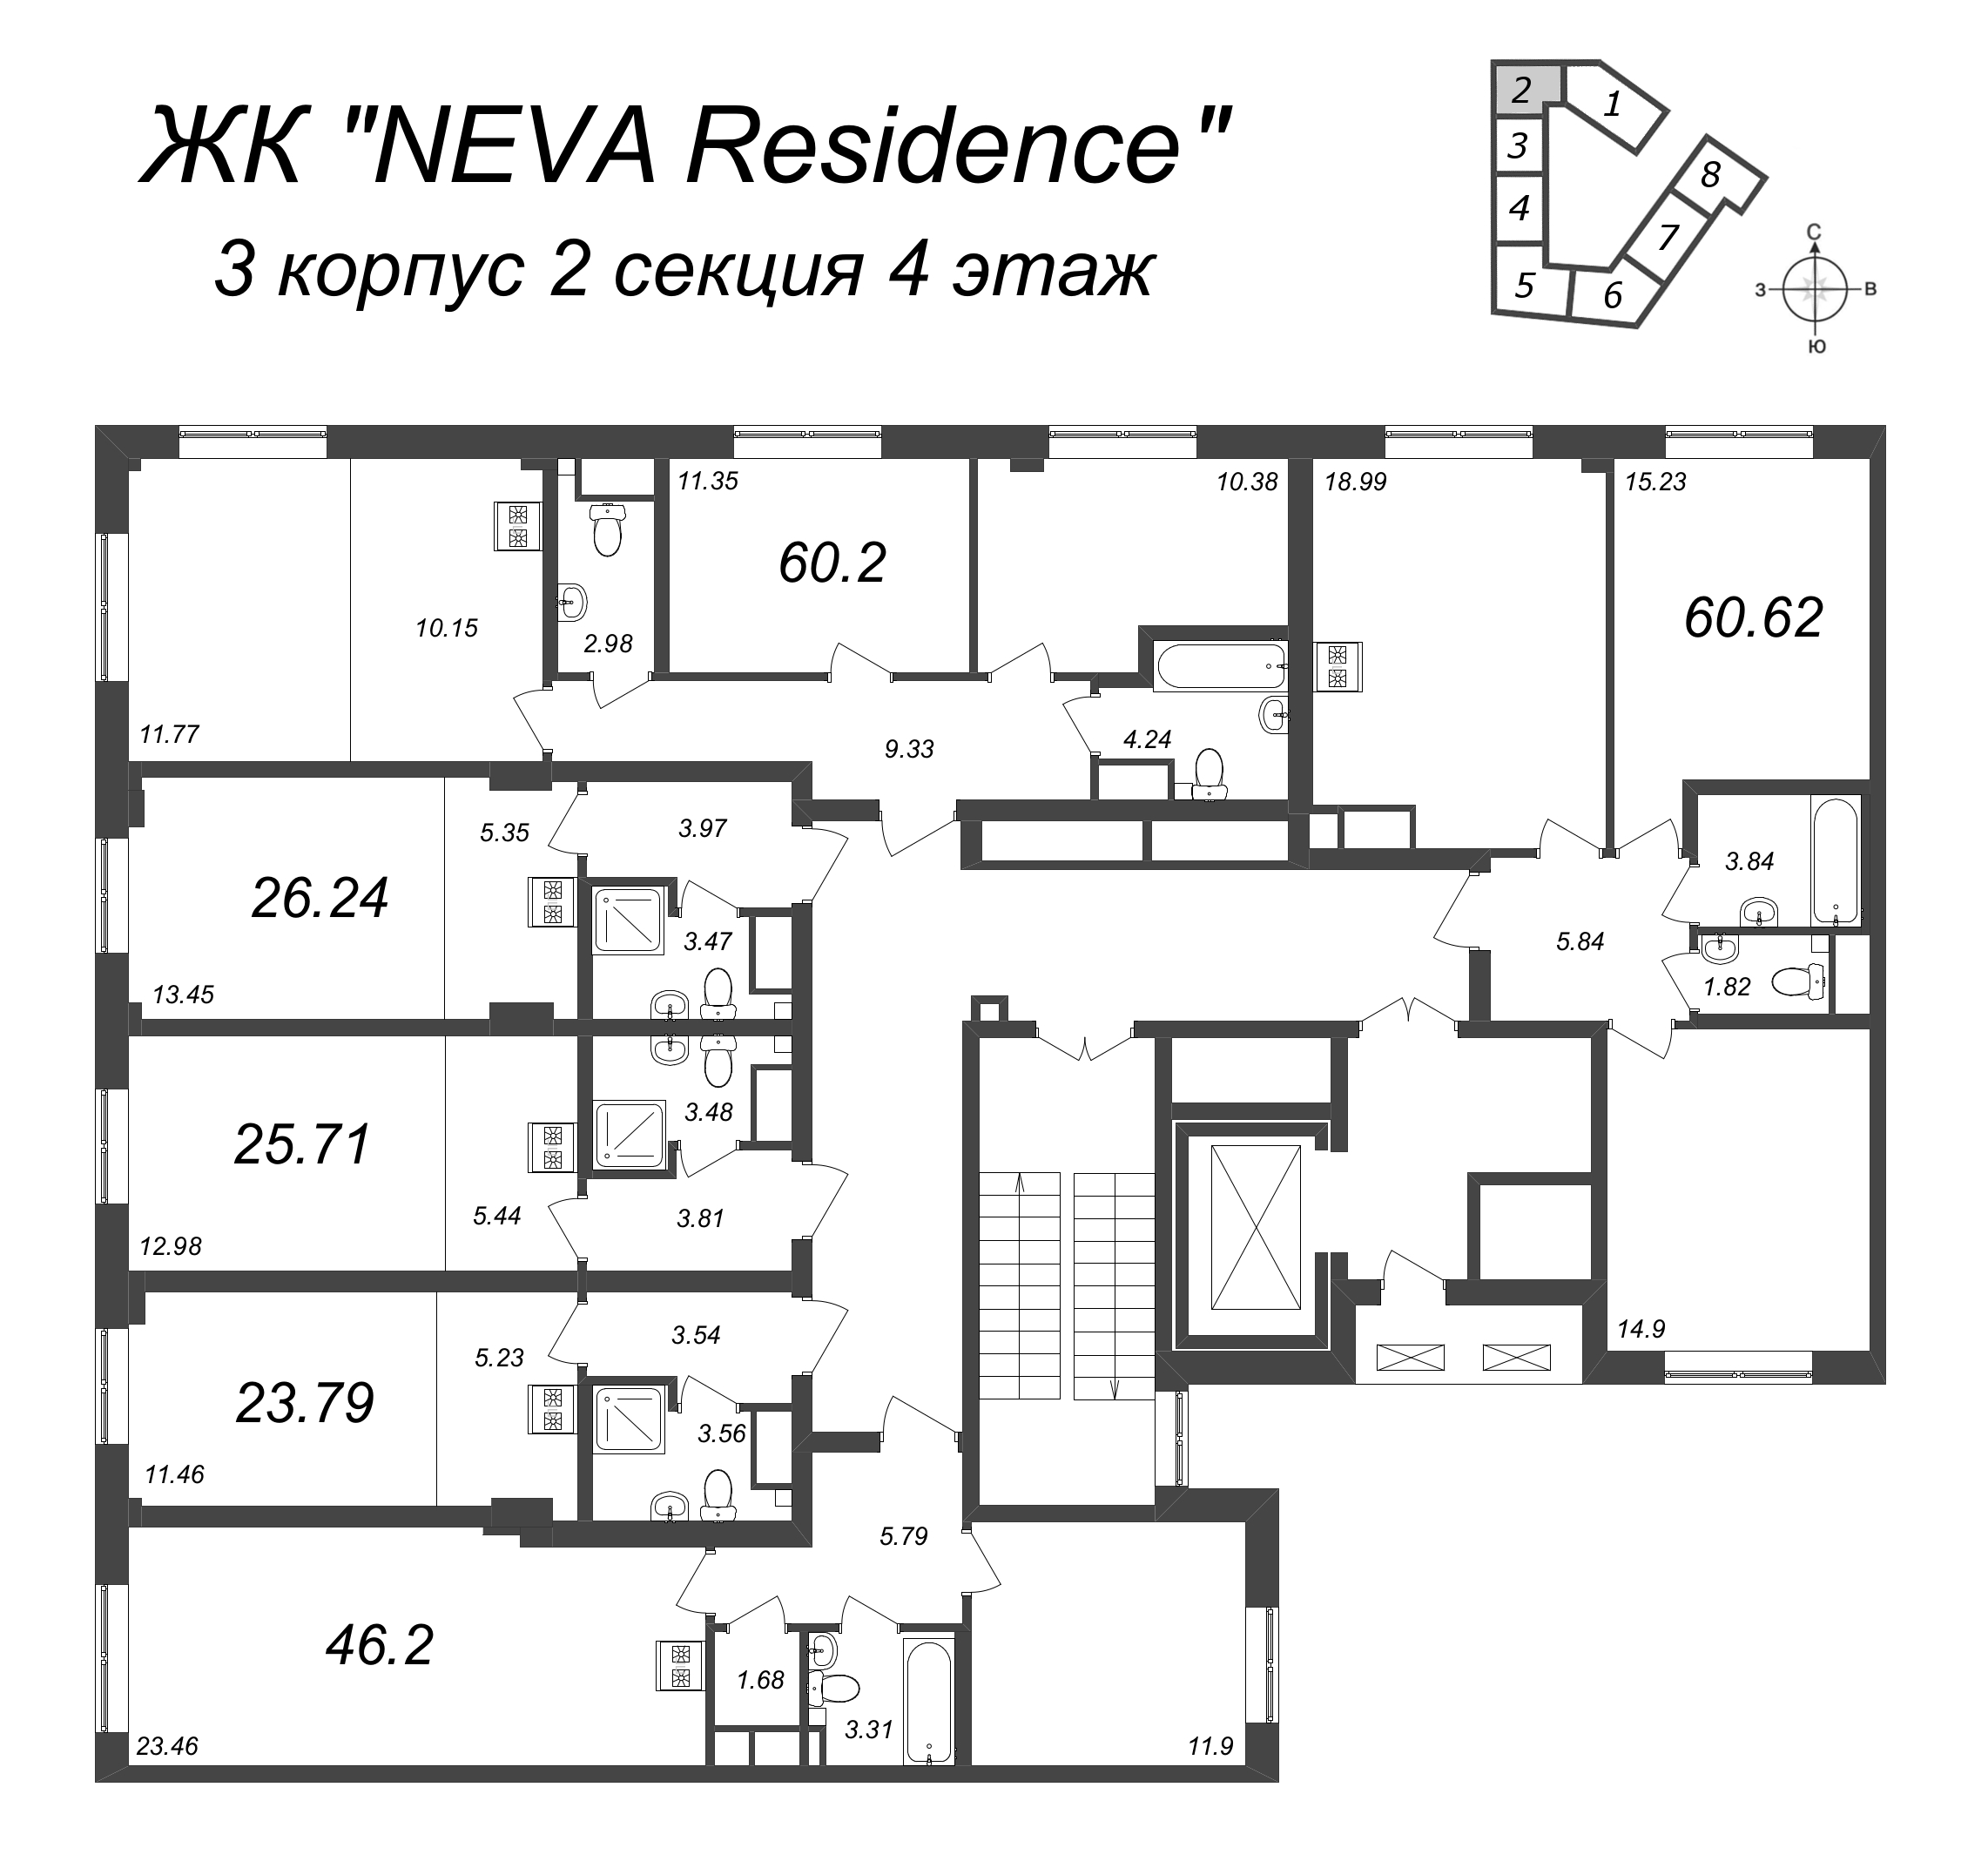 3-комнатная (Евро) квартира, 60.2 м² в ЖК "Neva Residence" - планировка этажа